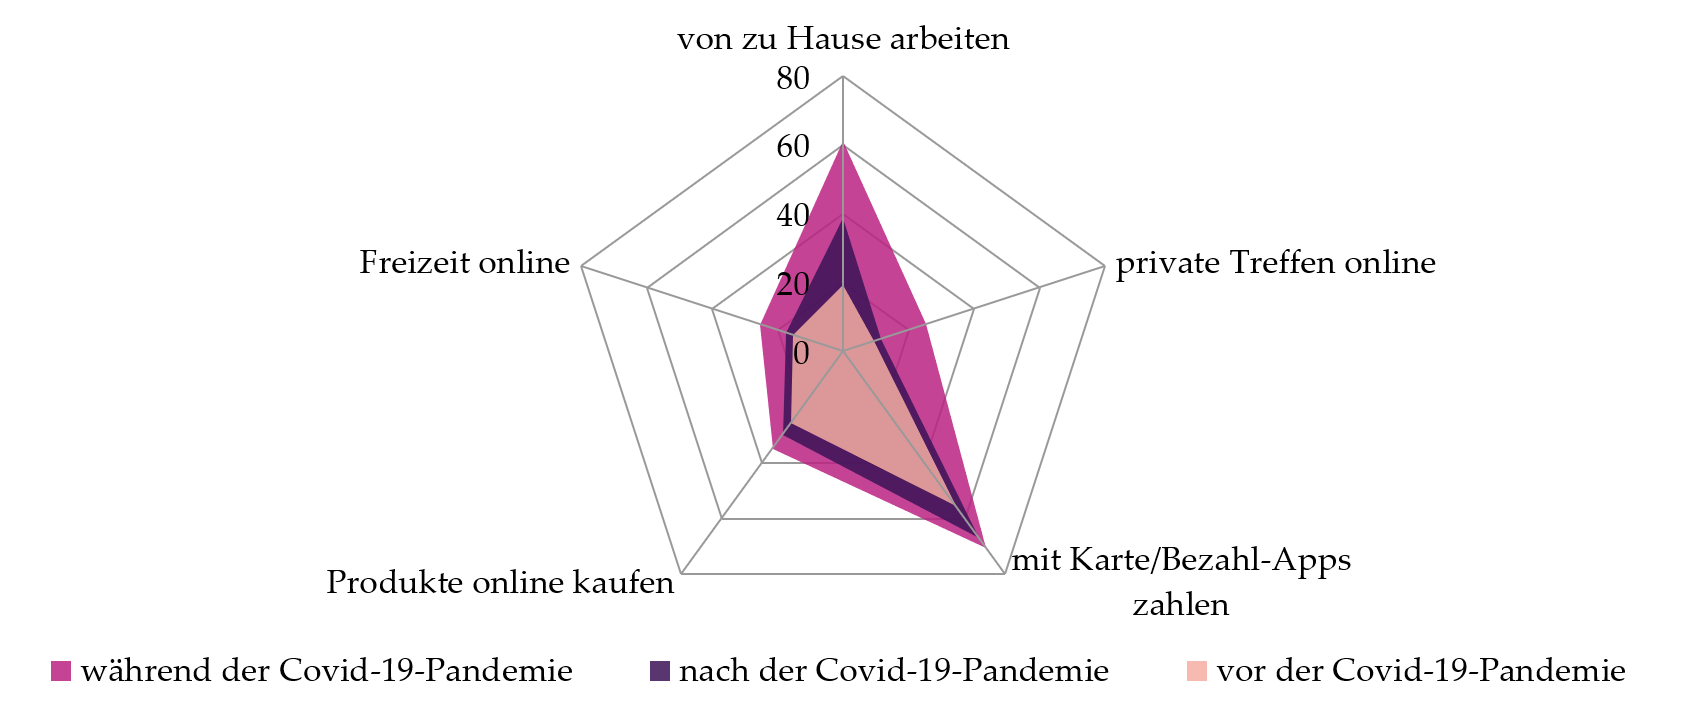 kurzfristig erzwungener und langfristig gewünschter Digitalisierungsschub durch die Covid-19-Pandemie in der Schweiz. (Grafik: ikmz/media change and innovation) 